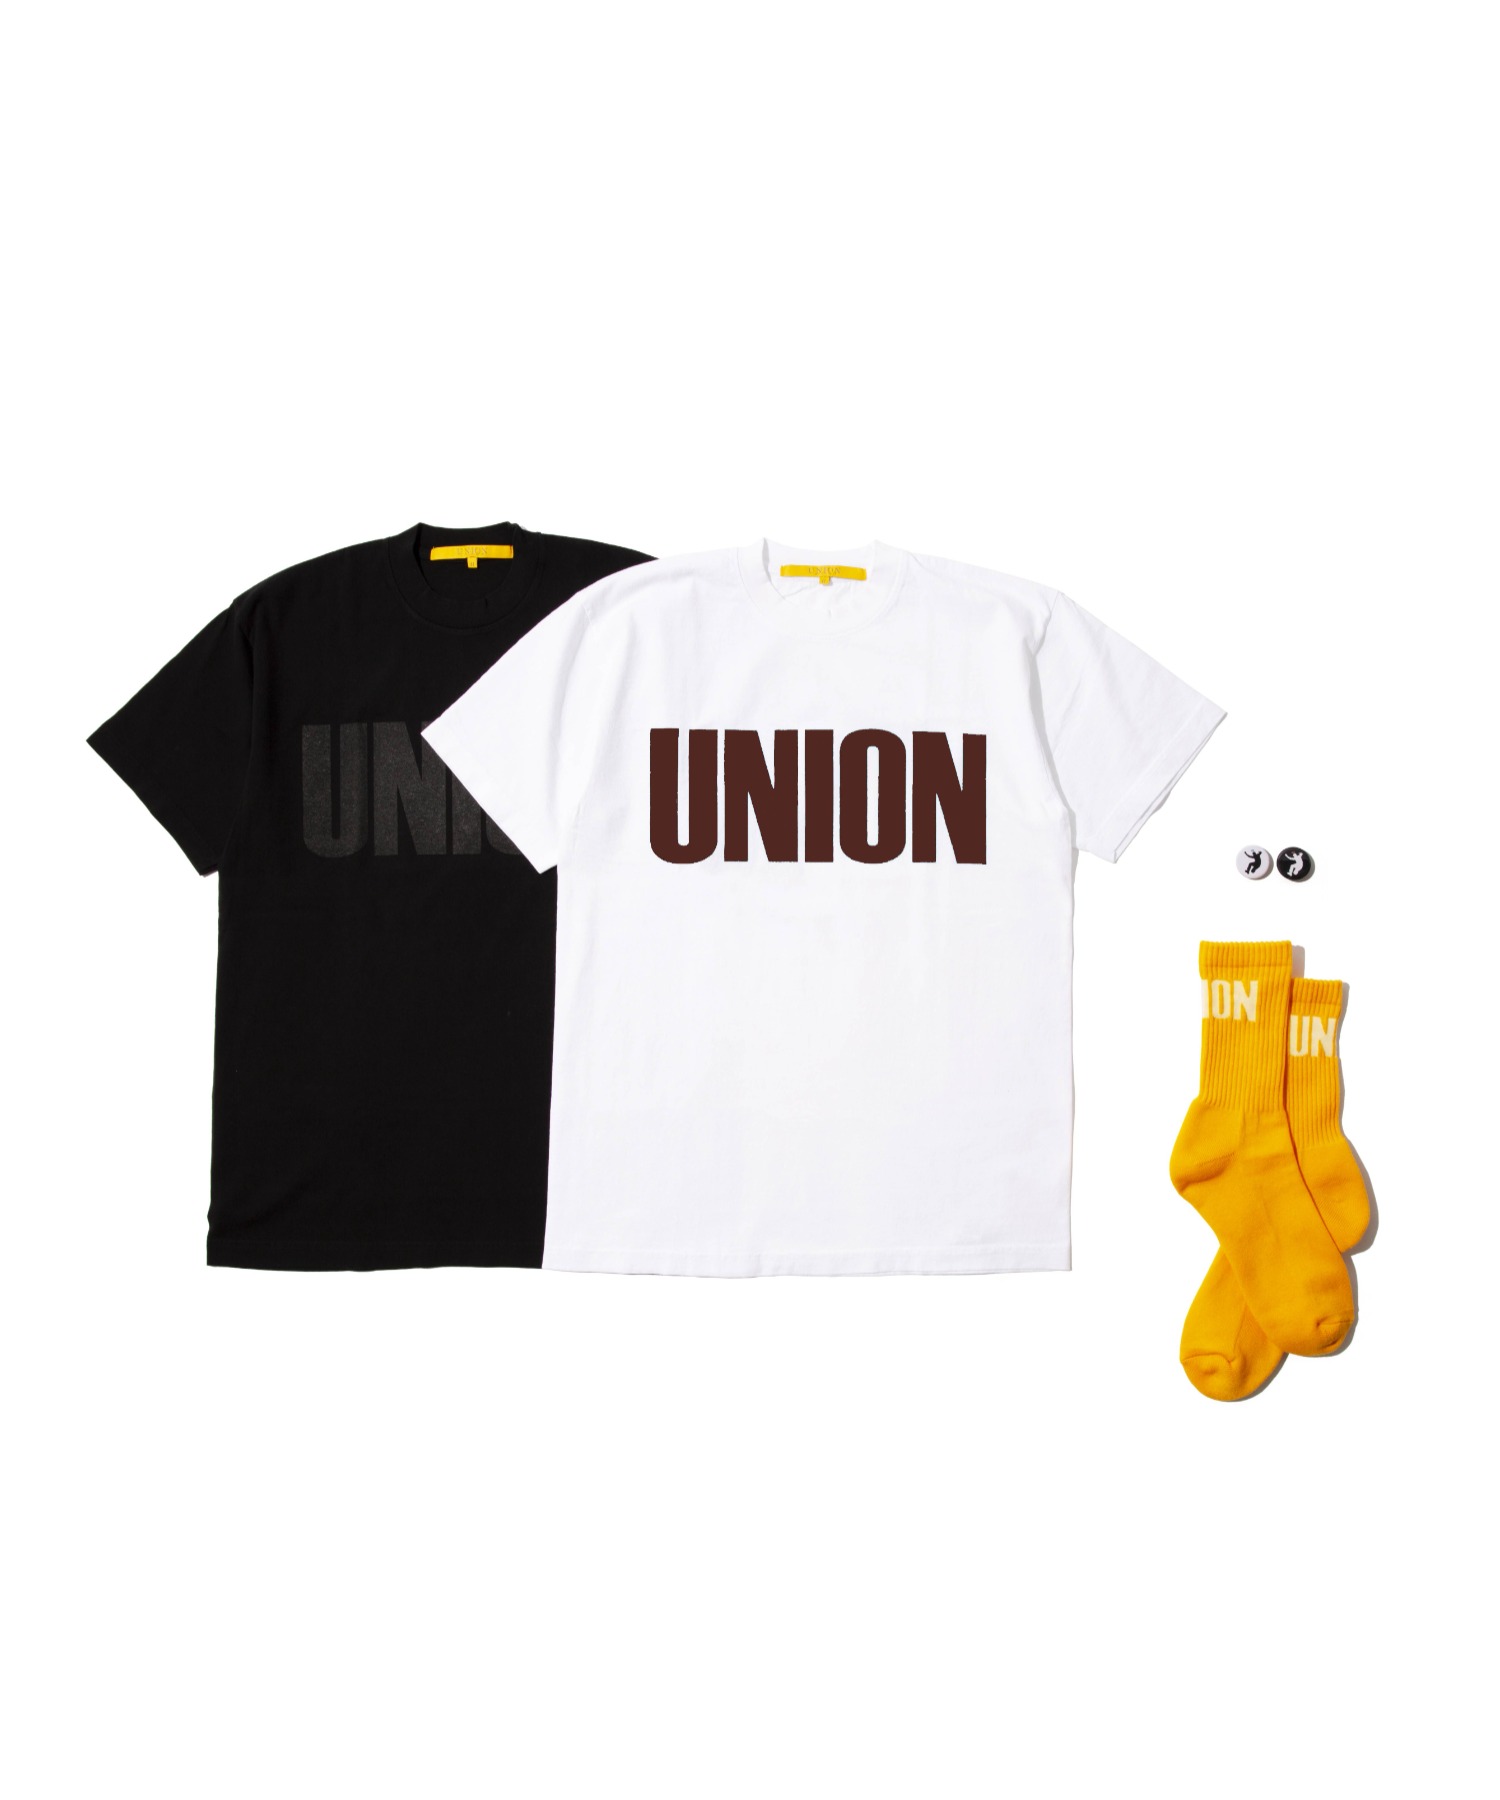 【ラッピング無料】 カタログギフトも UNIONZOZO Exclusive BIG Pack S ZOZO限定 Tシャツ2枚セット noblelinaje.com noblelinaje.com